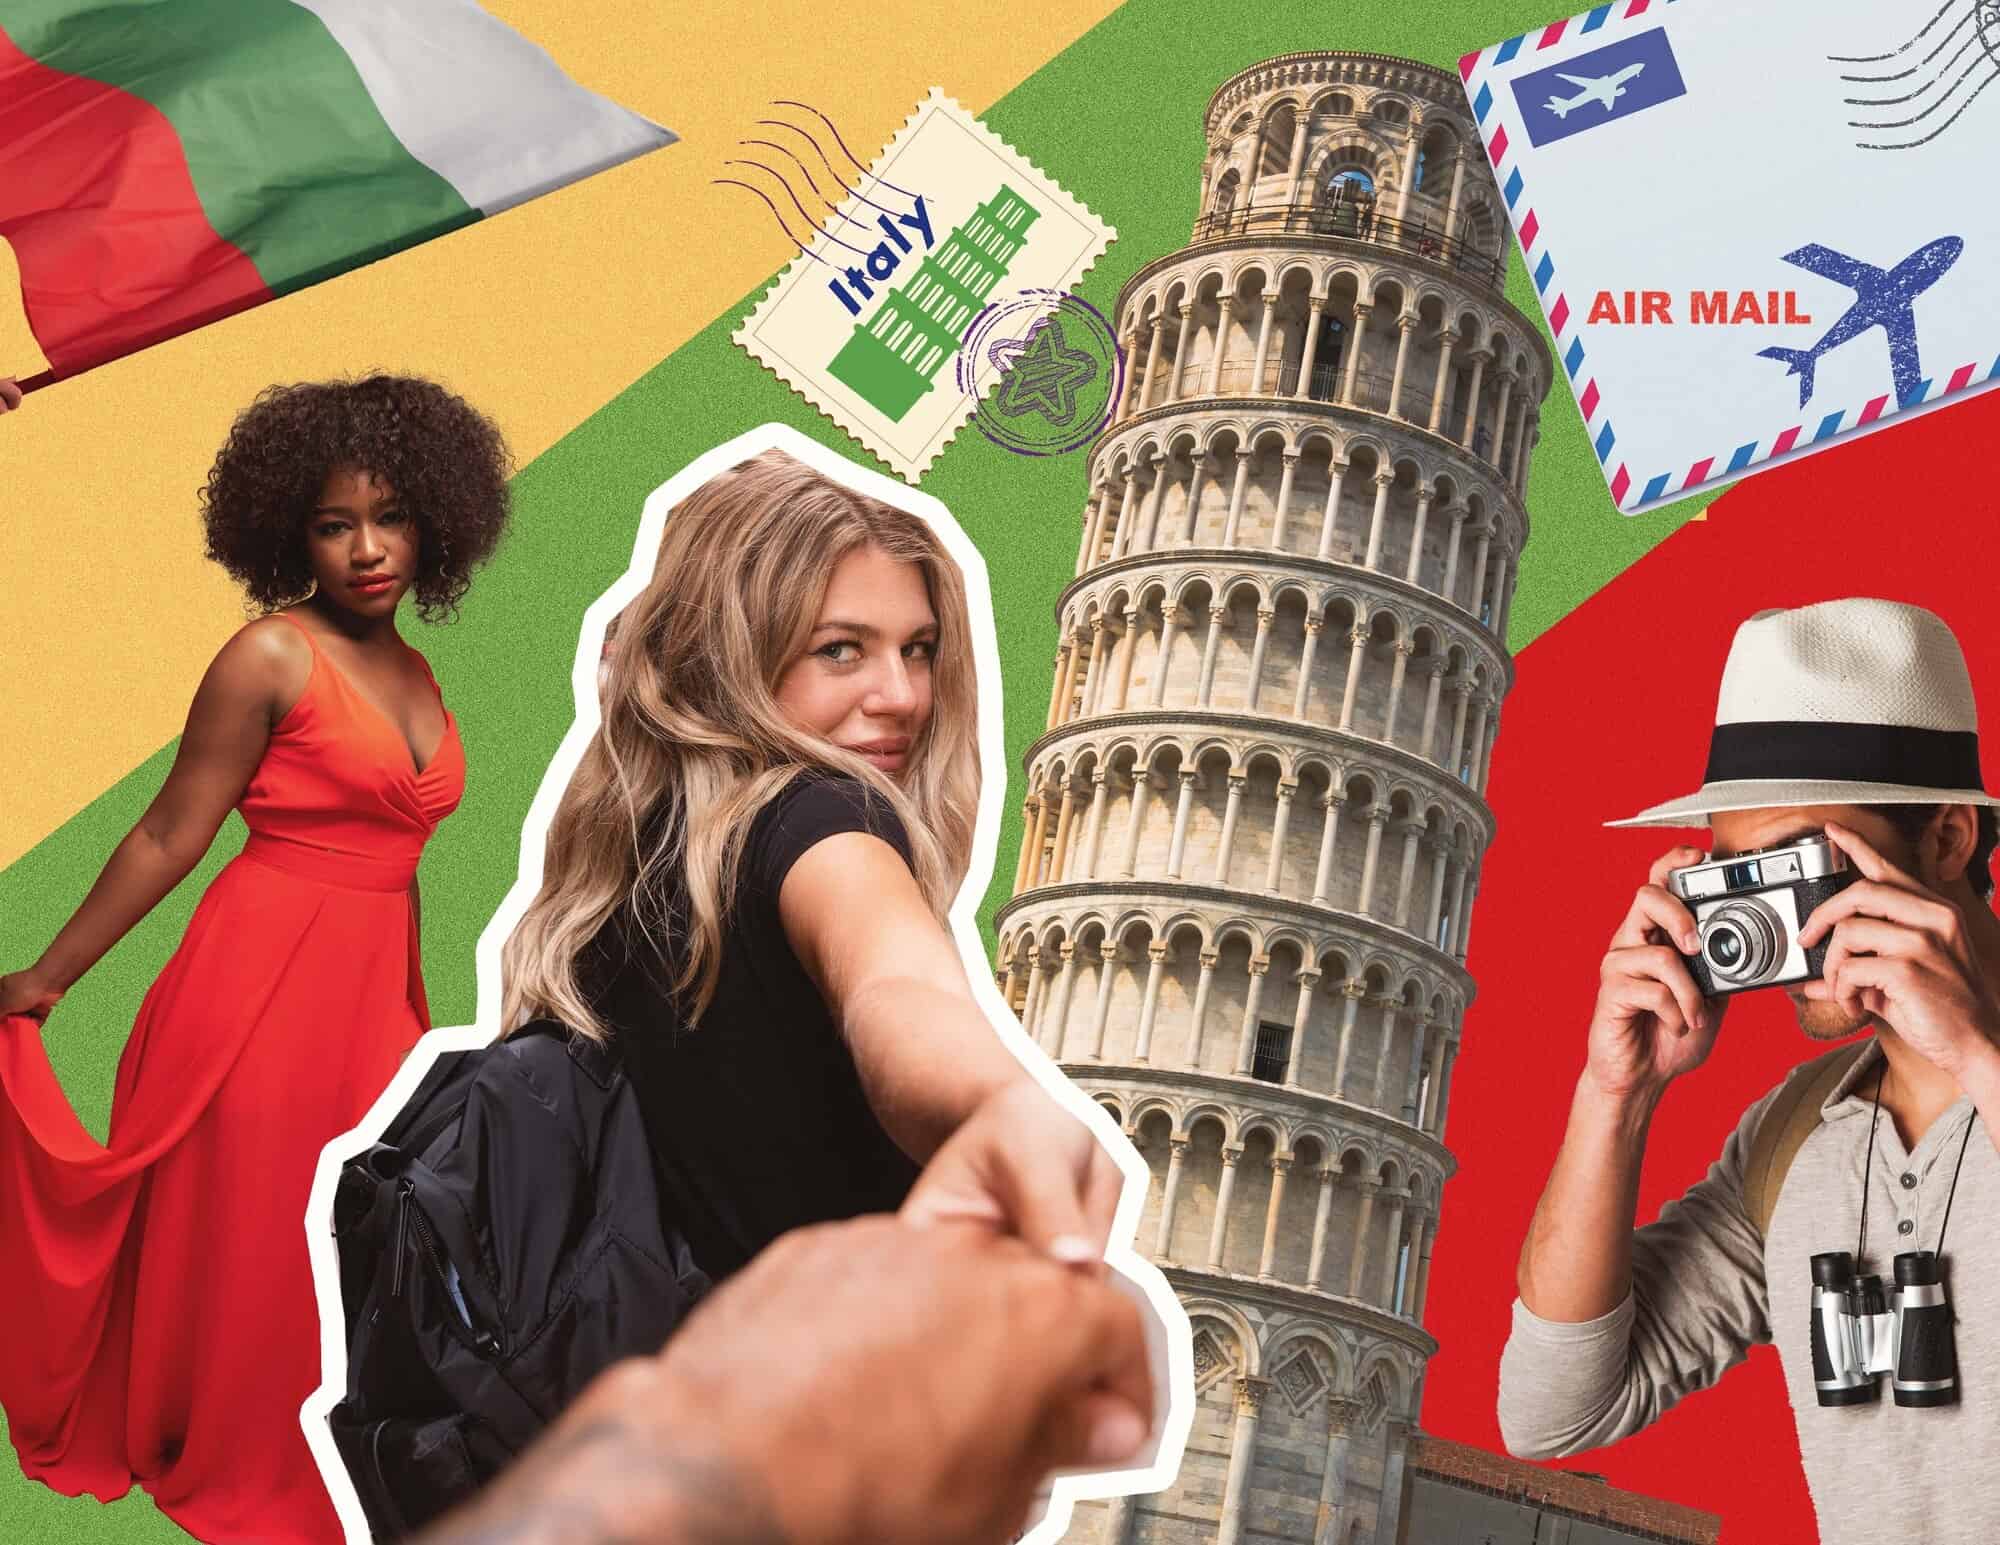 Szybkie zwiedzanie Włoch: Najważniejsze atrakcje we włoskim stylu